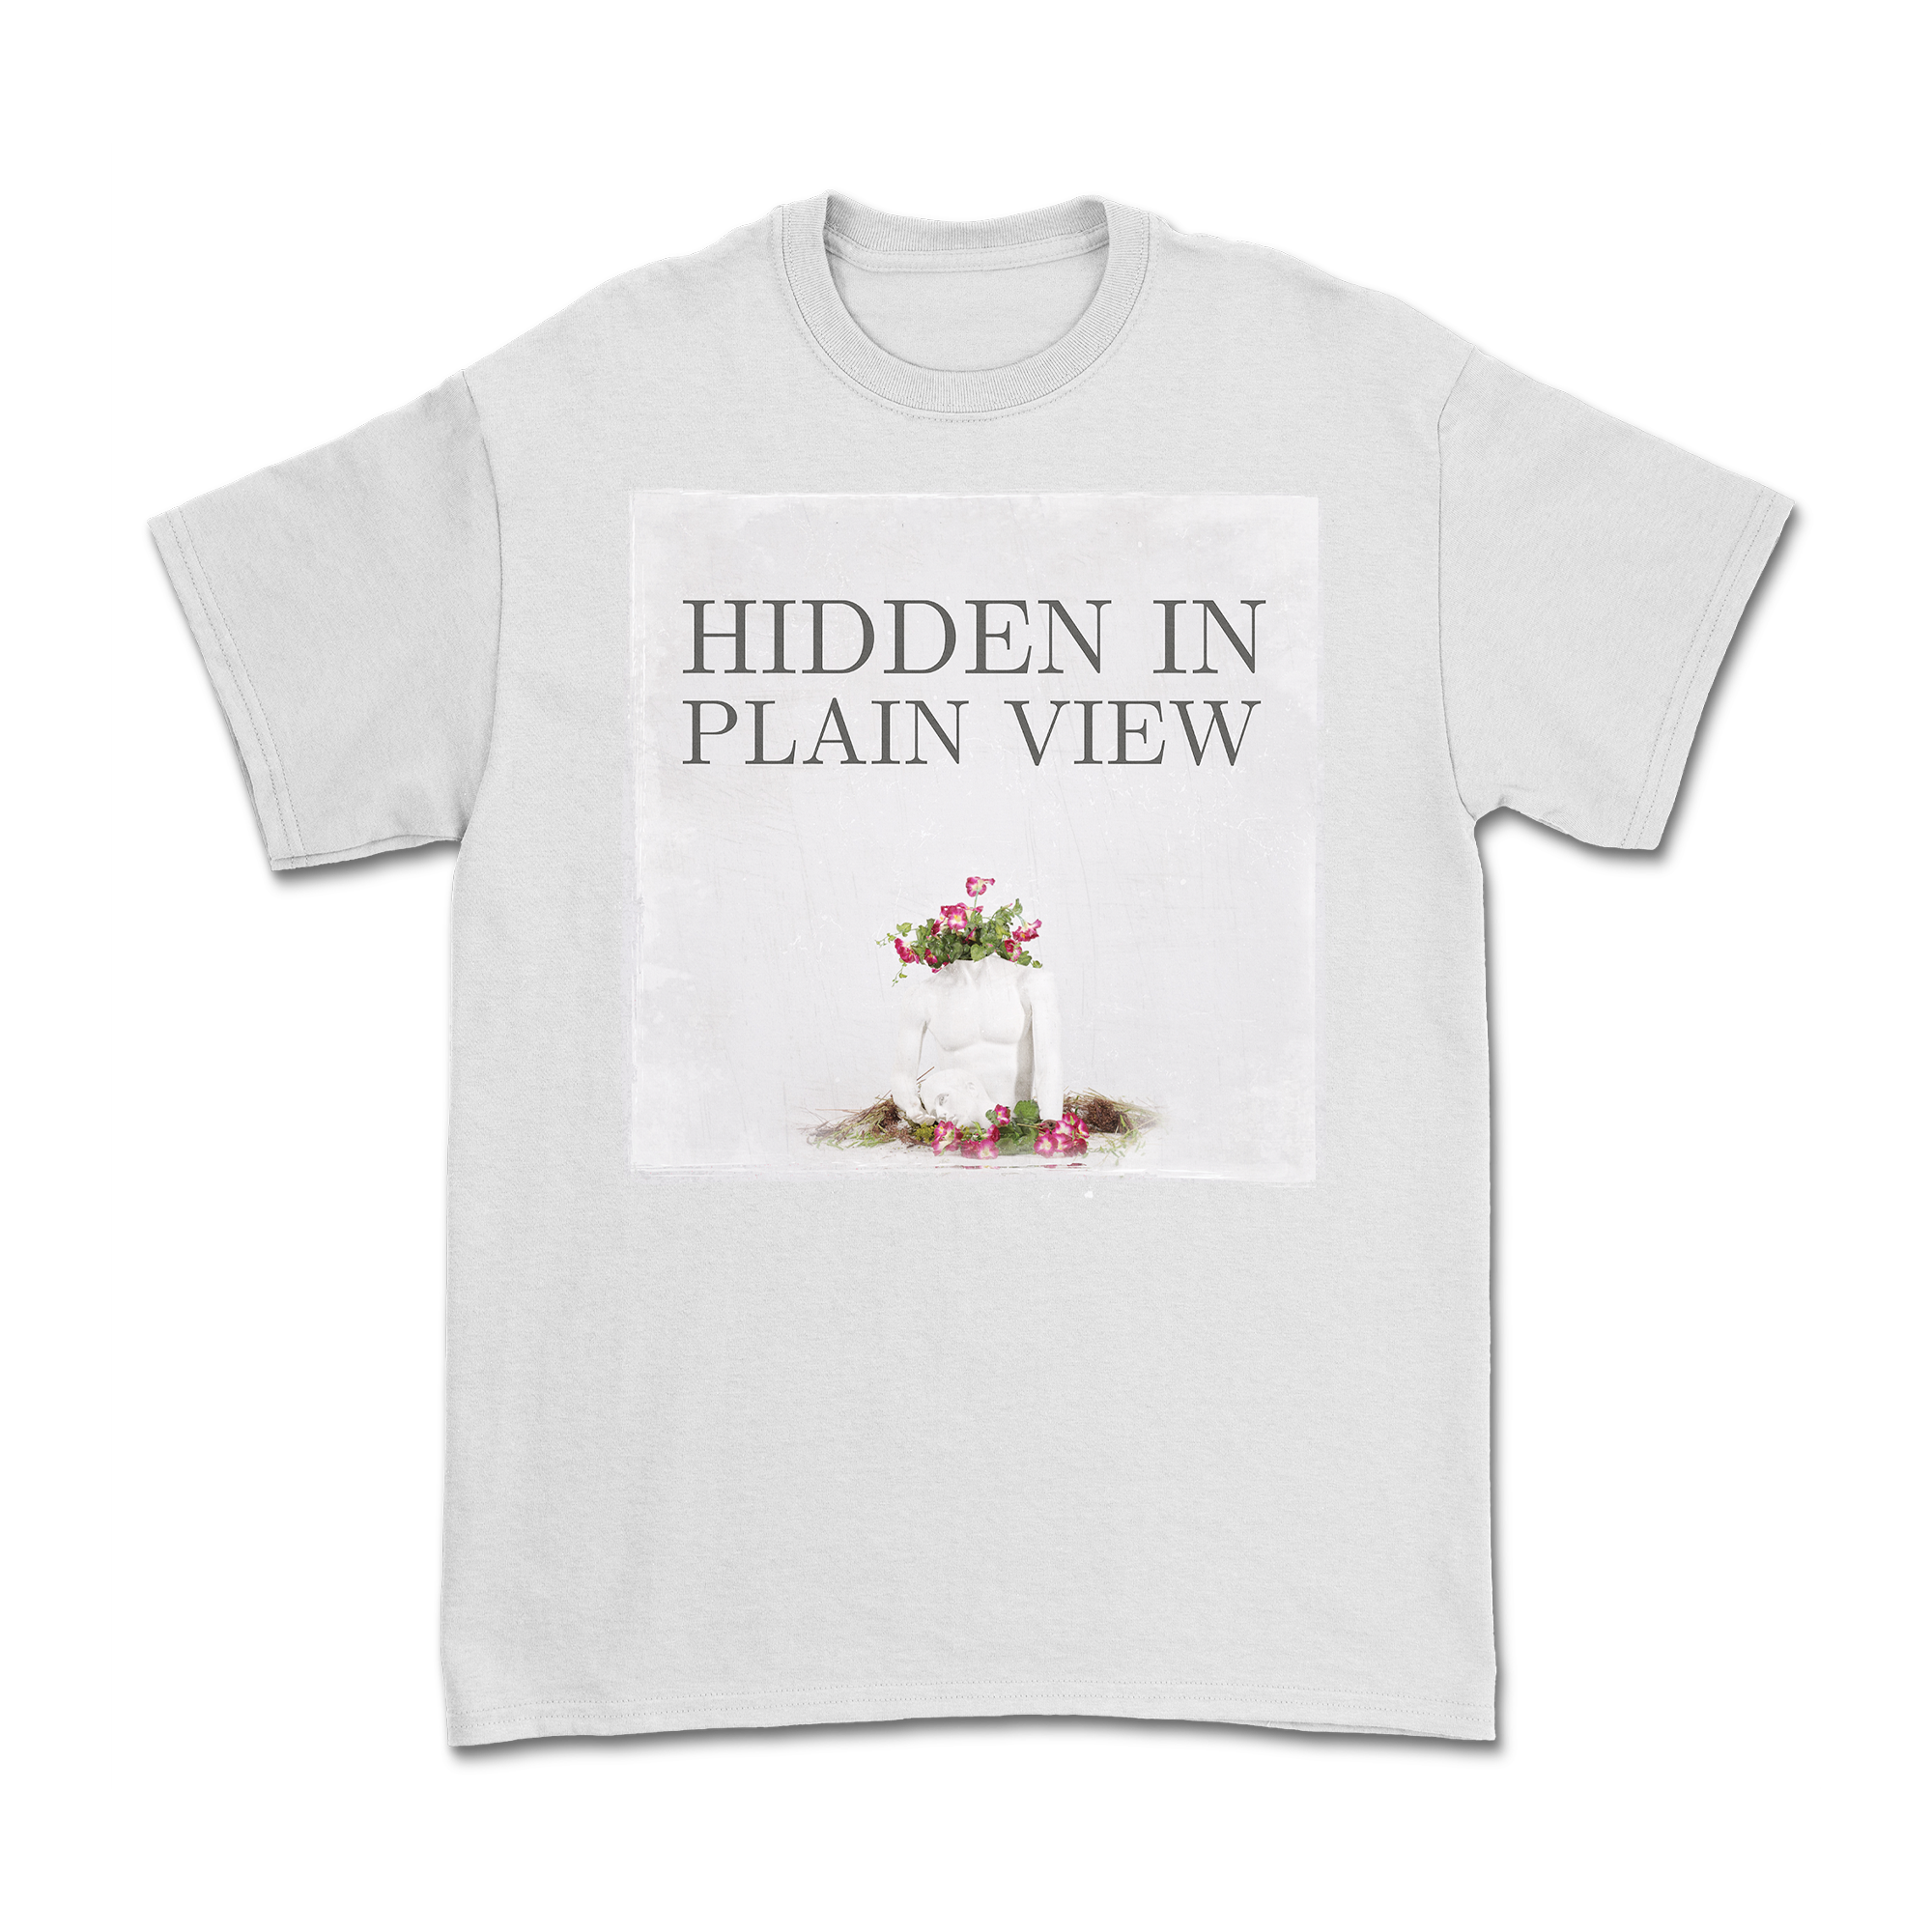 Hidden In Plain View - Temper Shirt